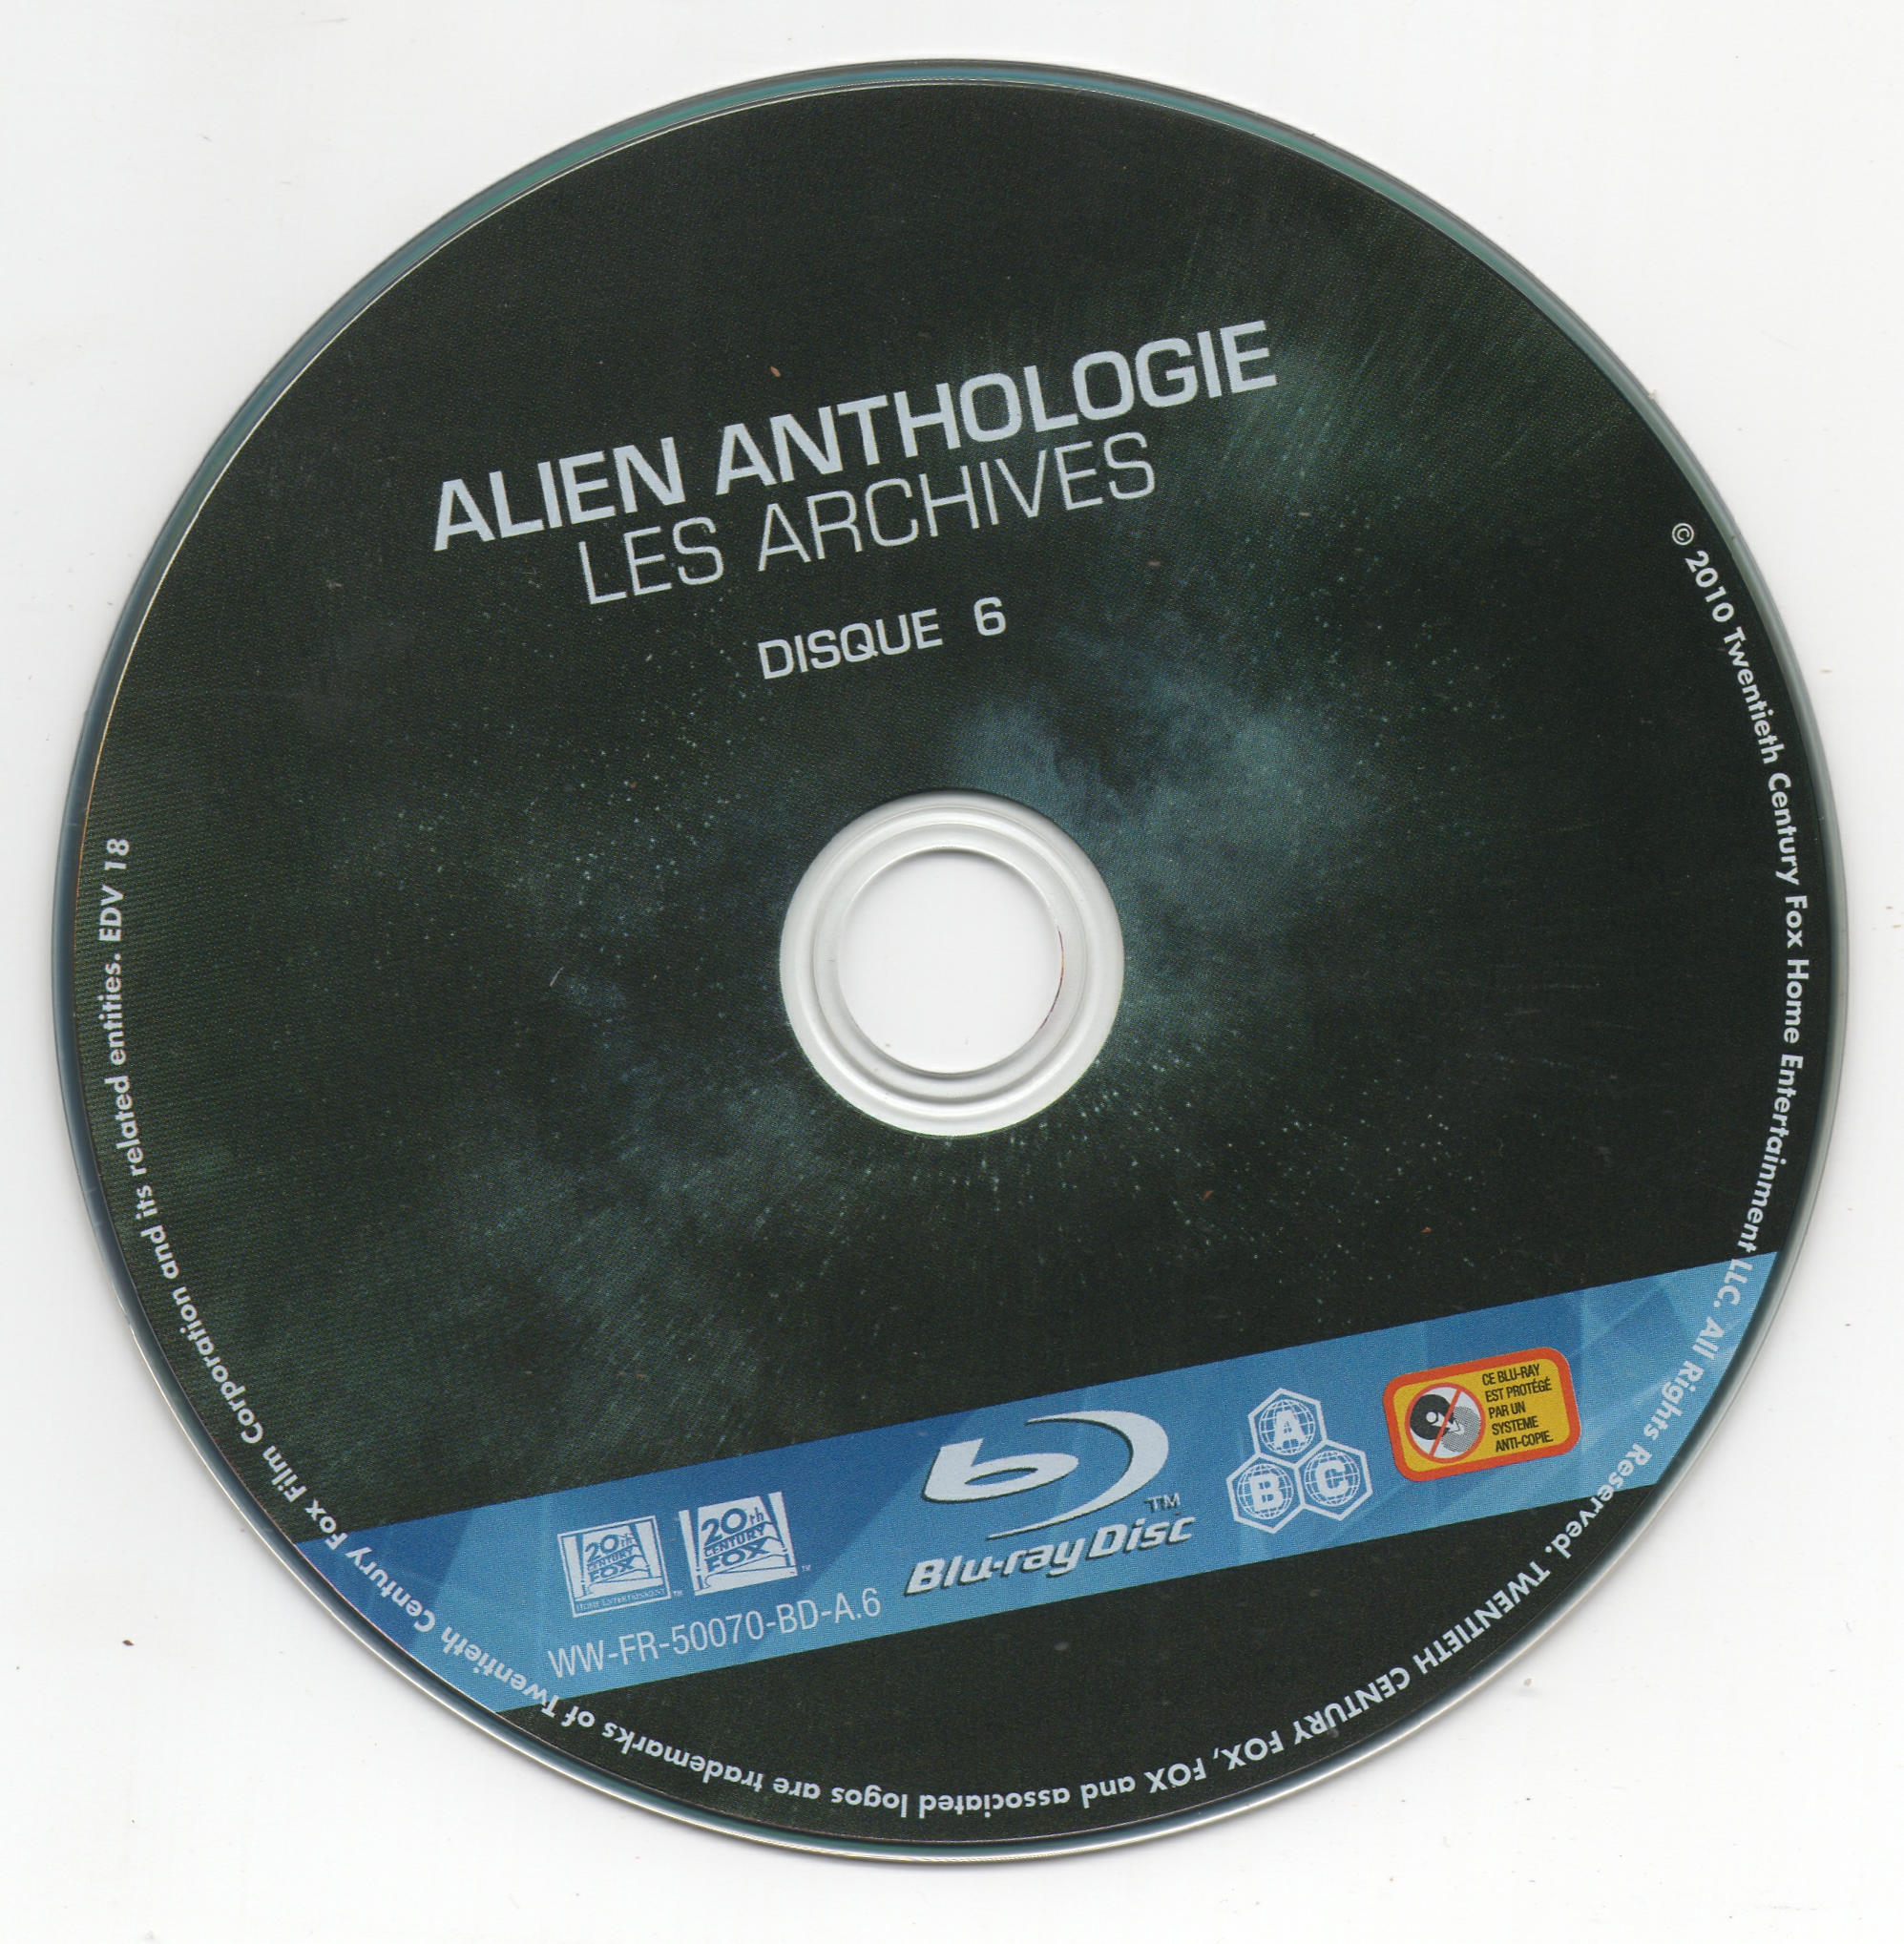 Alien Anthologie La archives (BLU-RAY)